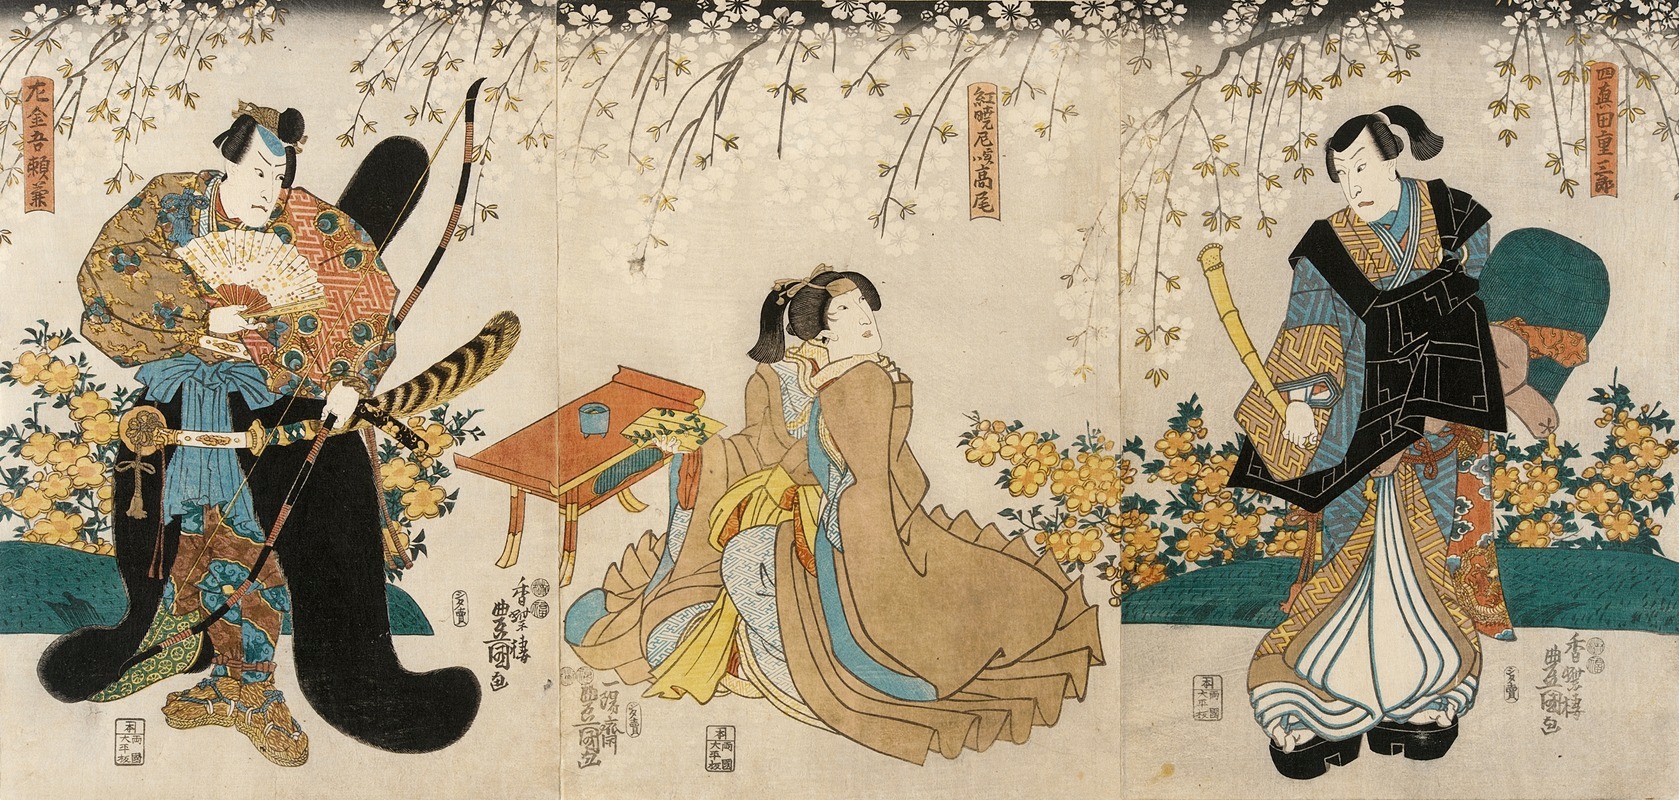 Utagawa Kunisada (Toyokuni III) - Actors in the Roles of Shimada Shigesaburō, Kugyō ama jitsuwa Takao and Sakingo Yorikane under Cherry Blossoms